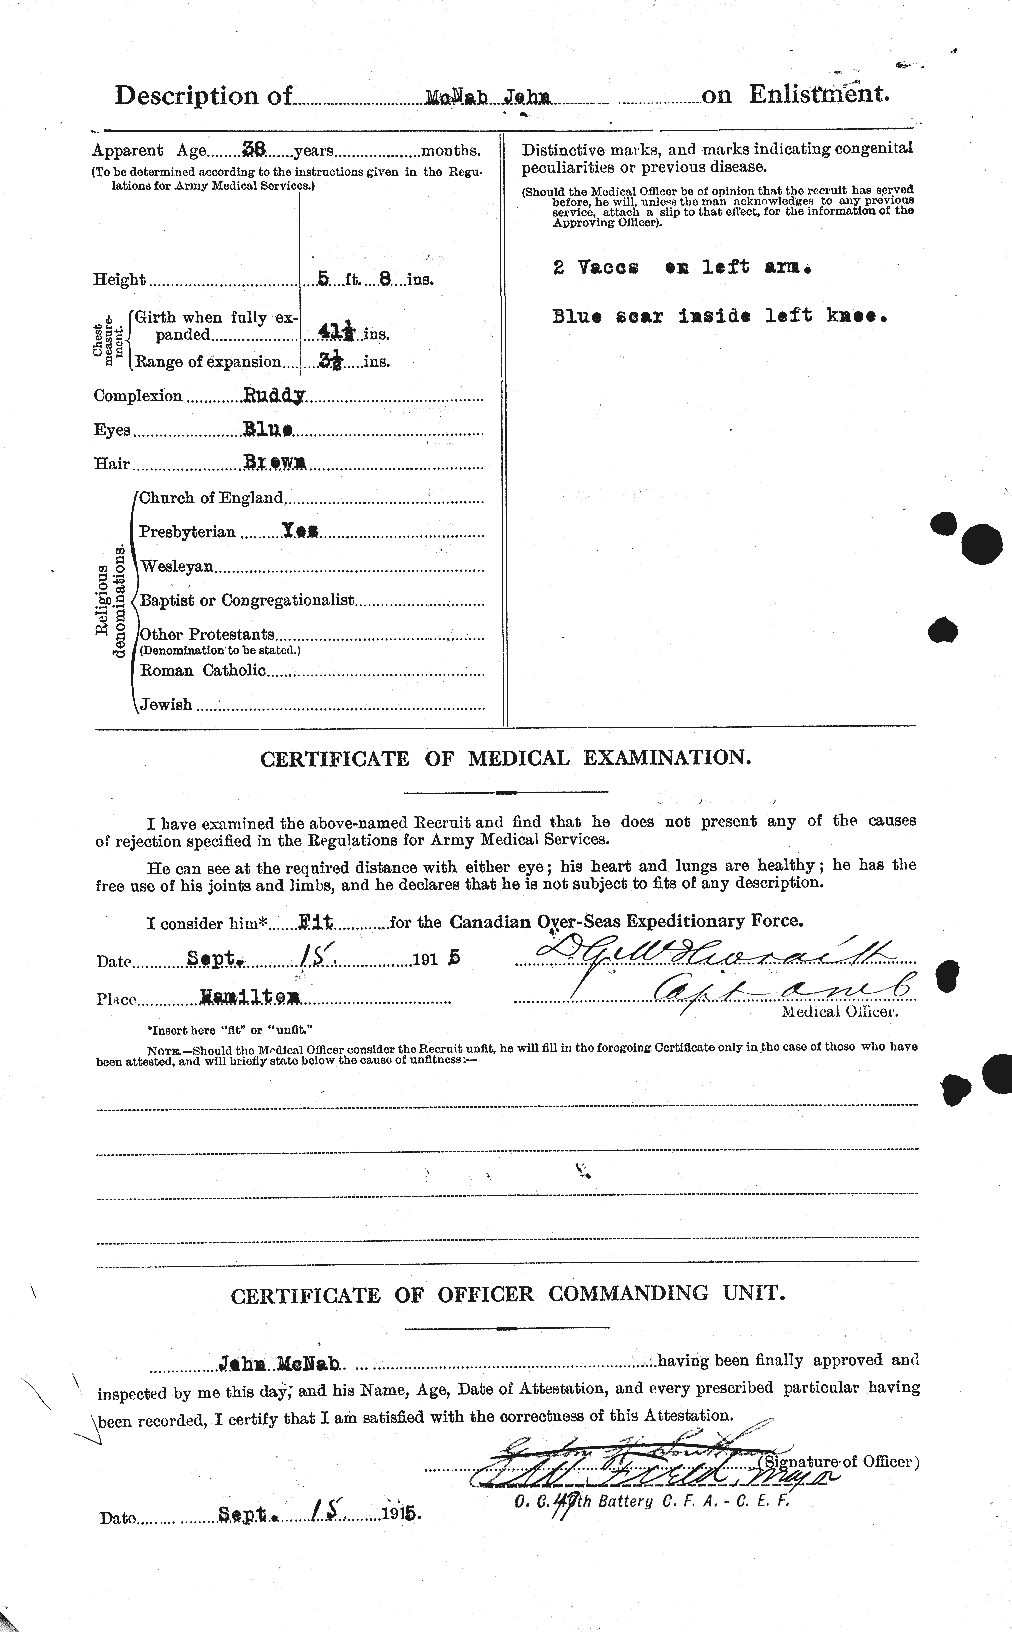 Dossiers du Personnel de la Première Guerre mondiale - CEC 539567b